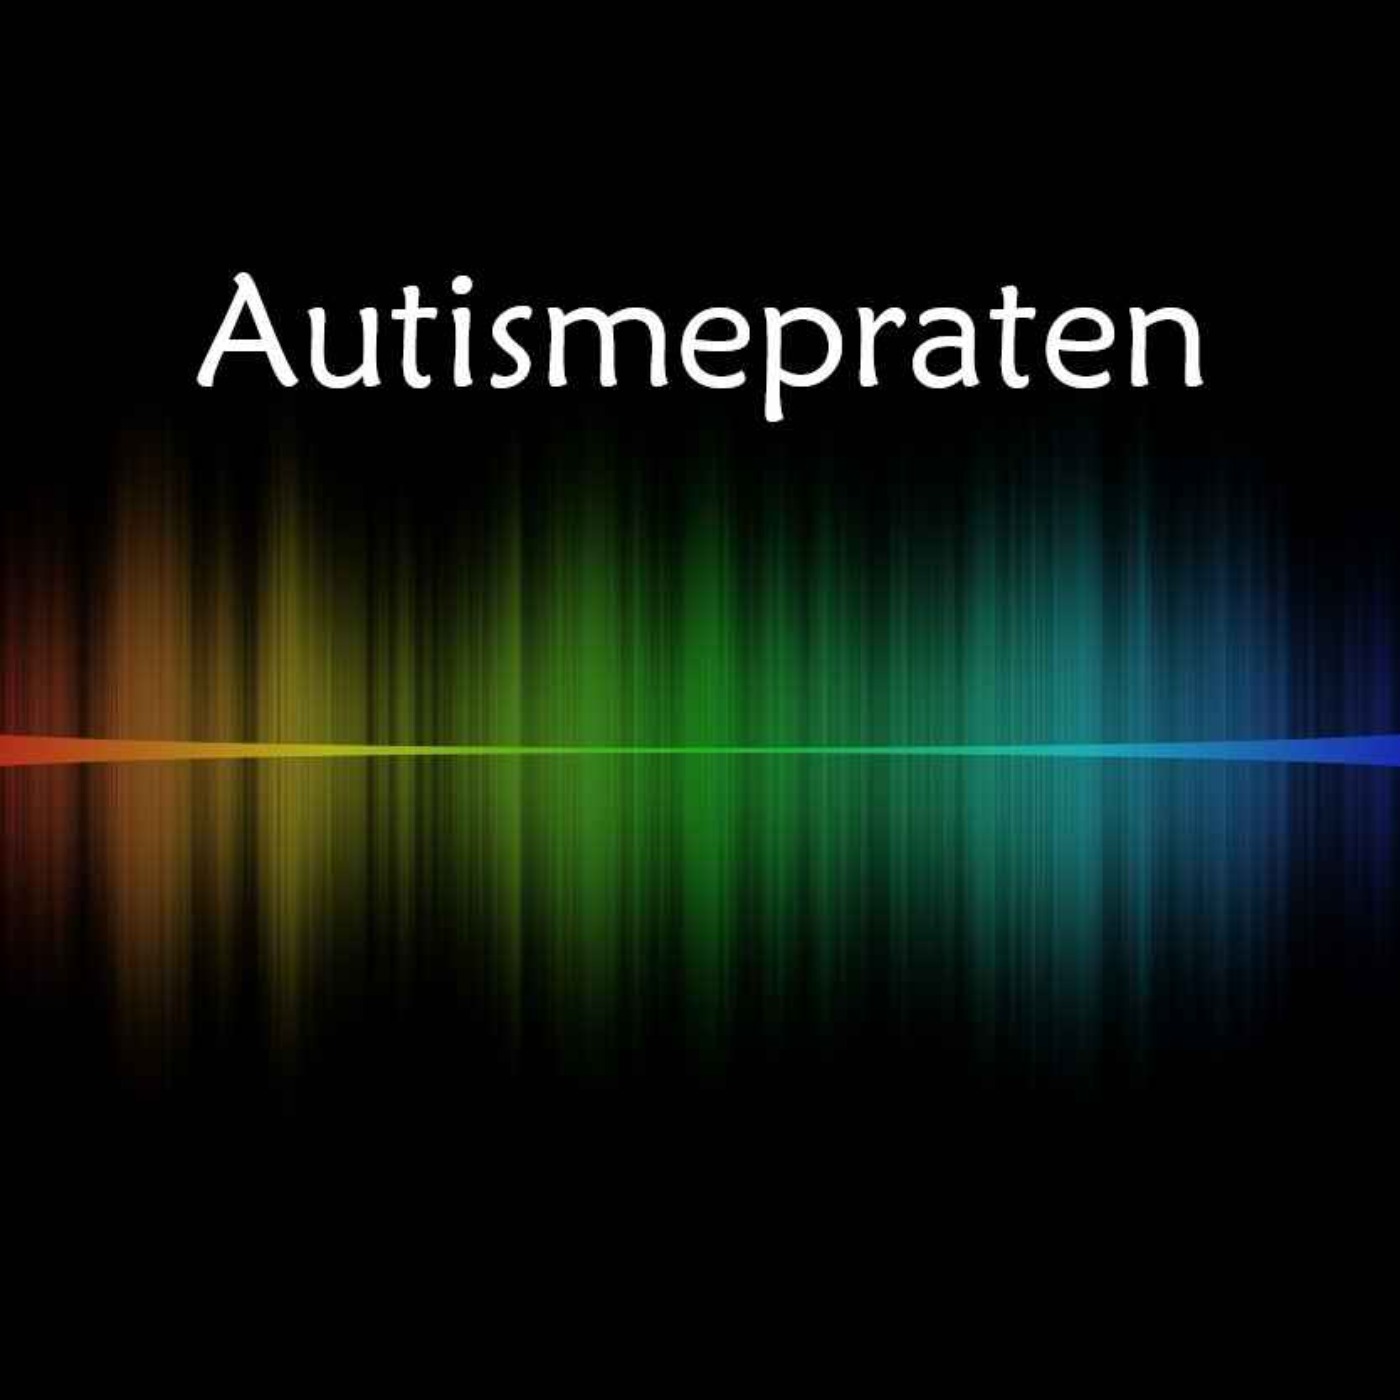 Autismepraten episode 7 - Å mestre livet som autist